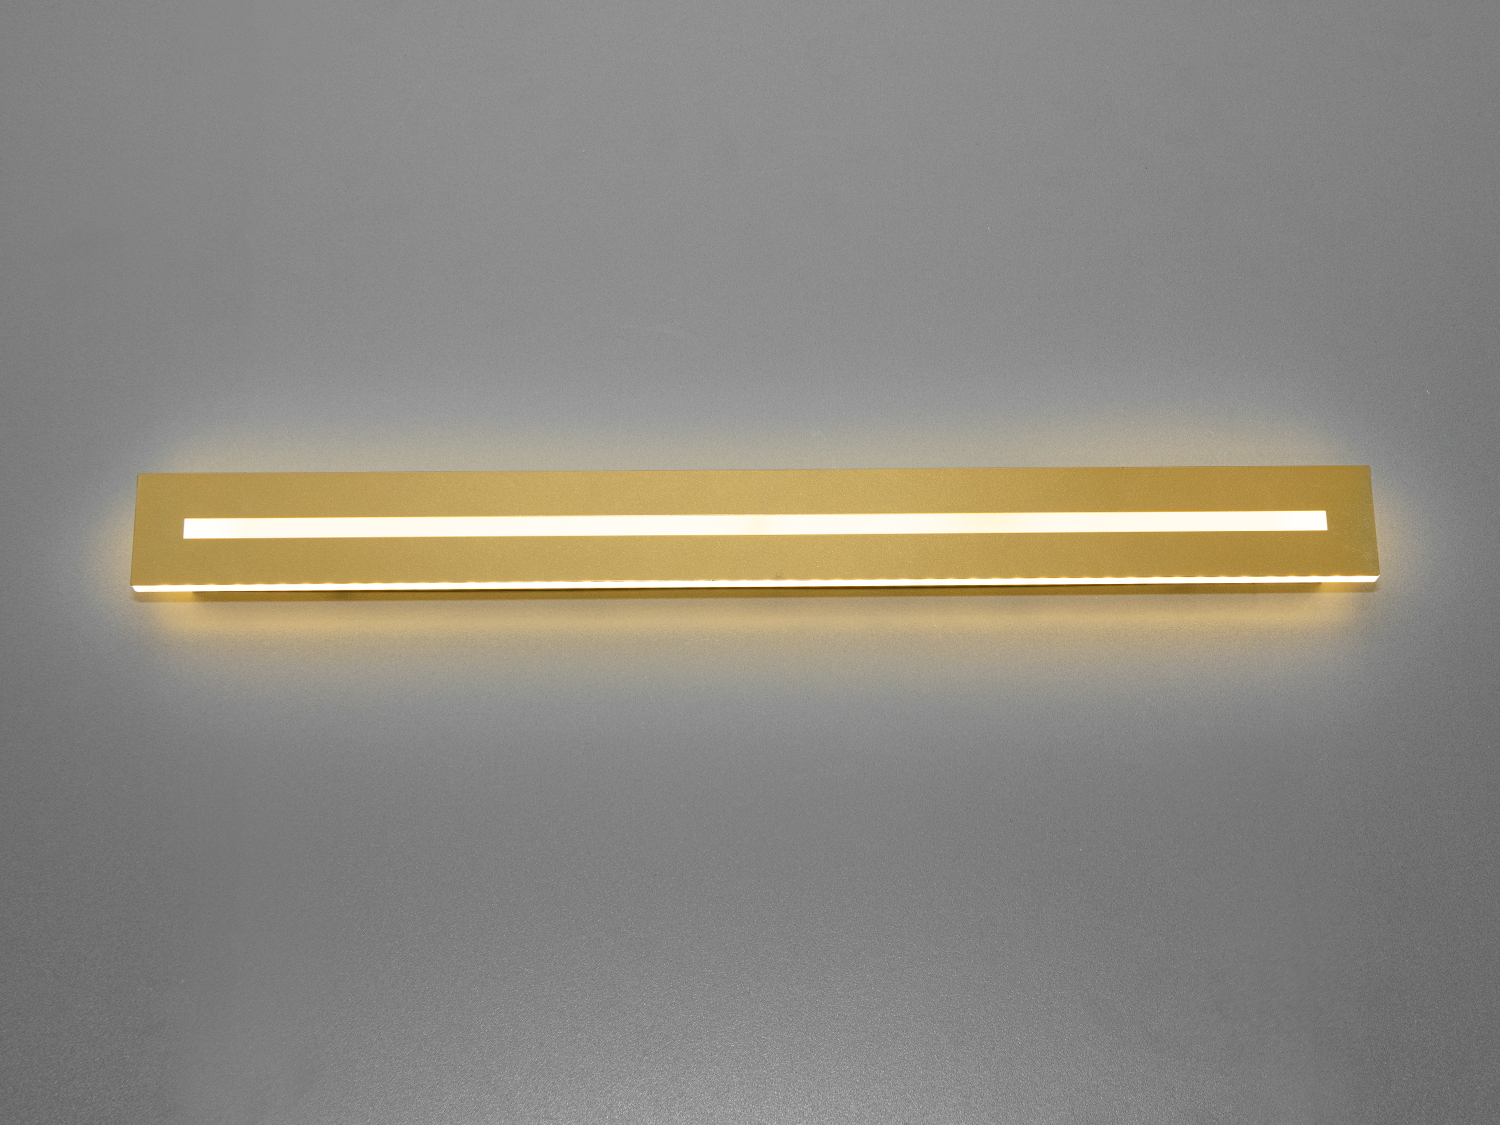 Перед вами світлодіодний світильник планка на 60 ват, який втілює в собі ідеал мінімалістичної естетики та функціональної практичності. Його унікальність криється в простоті ліній та чистоті світла, що робить його вишуканим доповненням до будь-якого сучасного простору.
Світлодіоди, що використовуються в цьому світильнику, забезпечують яскраве, але не різке світло, ідеальне для акцентного підсвічування дзеркал, картин, чи особливих деталей інтер'єру, при цьому підкреслюючи їхню красу. Завдяки регульованій колірній температурі, яку можна змінити просто через вимикач, цей світильник дозволяє створити ідеальну атмосферу для будь-якої діяльності, від розслабленого читання книги до зосередженої роботи в кабінеті.
Акриловий розсіювач, міцний та стійкий до подряпин, гарантує, що світильник збереже свій первинний вигляд на довгі роки, в той час як довговічність світлодіодів забезпечує тривале та надійне освітлення. Це не тільки знижує витрати на обслуговування та заміну, але й забезпечує стабільний внесок у екологічність та енергоефективність вашого дому чи офісу.
Цей світильник 